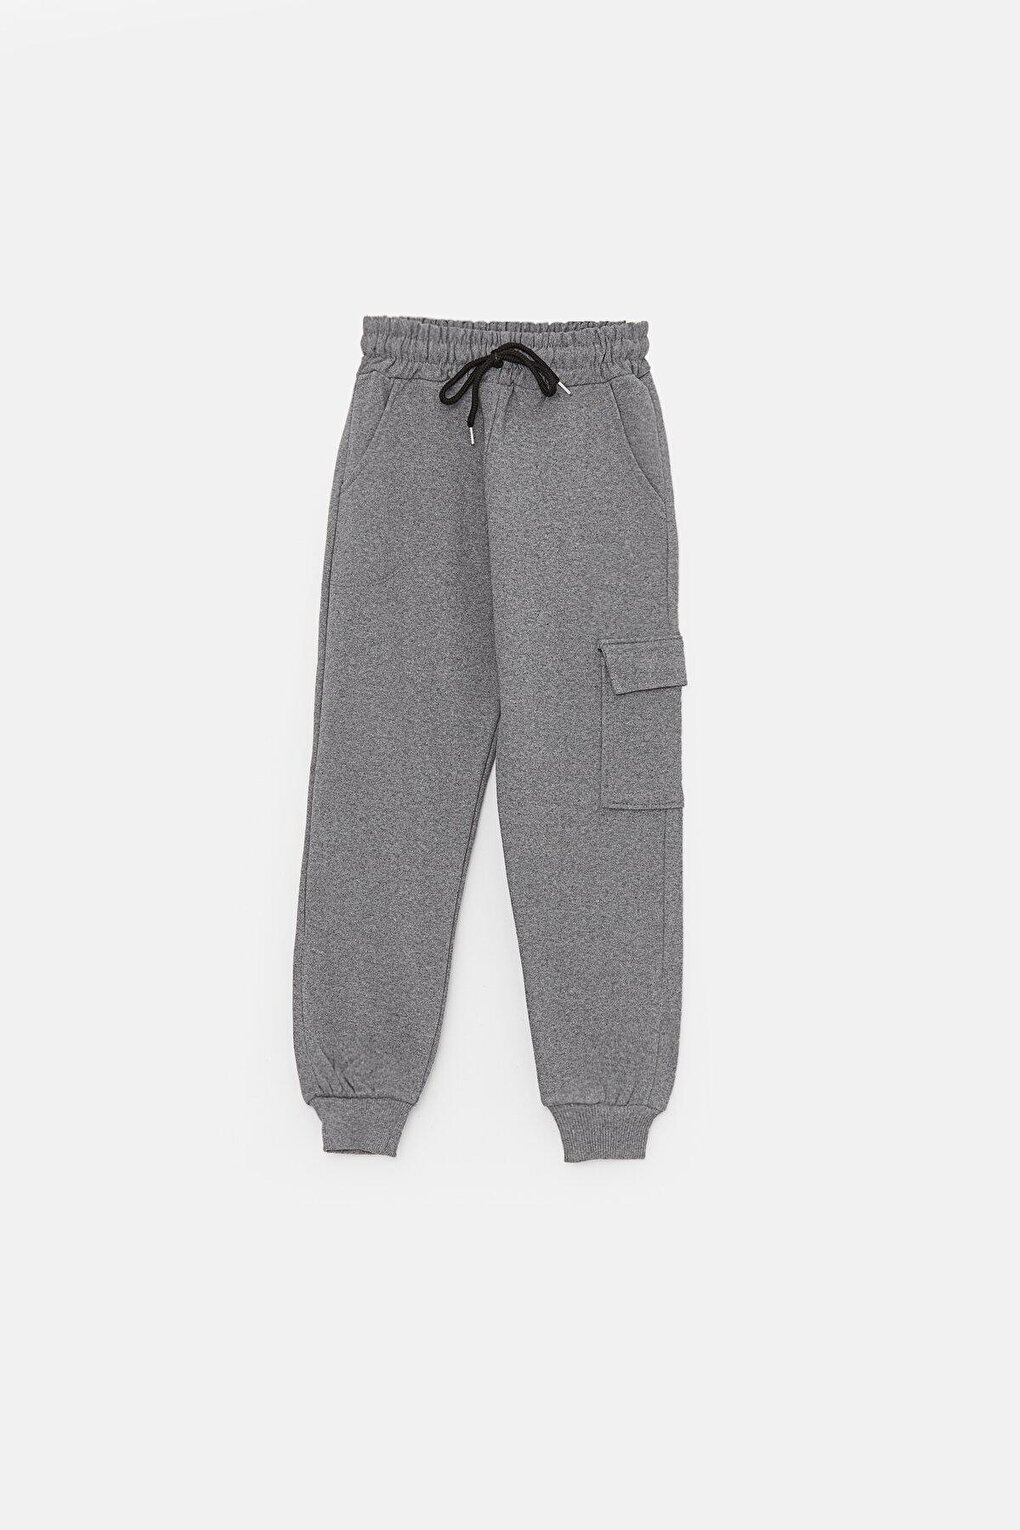 цена Спортивные штаны для мальчиков с карманом-карго JackandRoy, серый